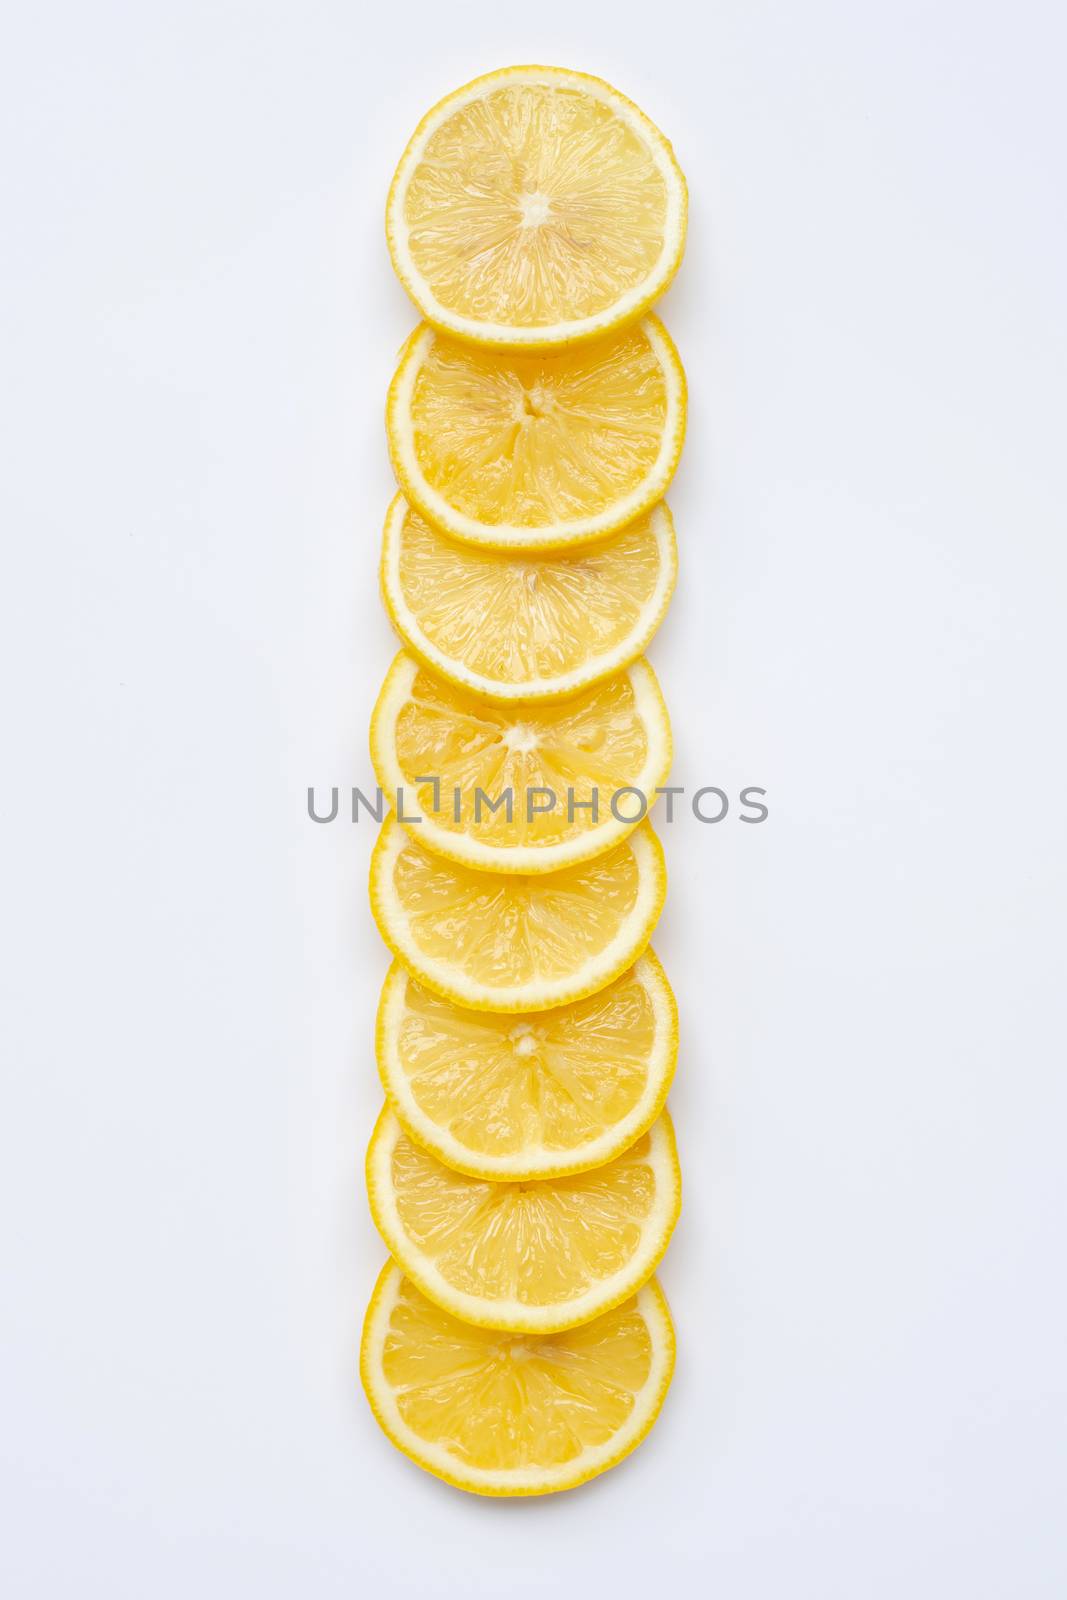 Fresh lemon slices on white by Bowonpat